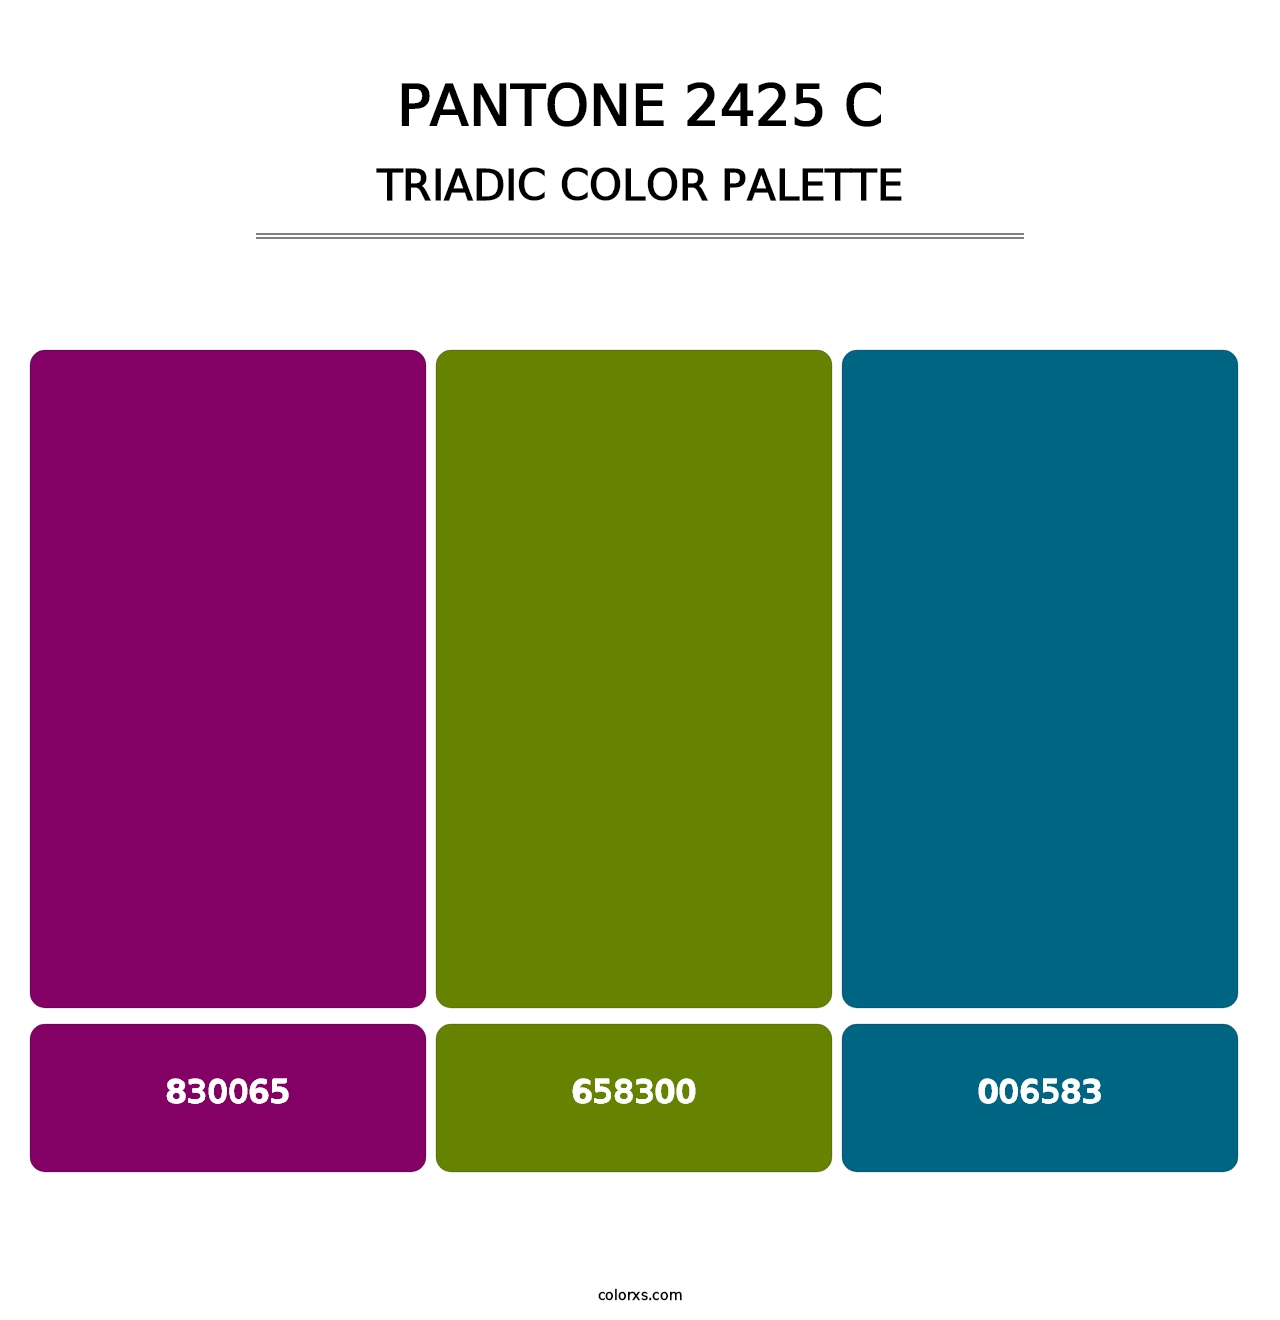 PANTONE 2425 C - Triadic Color Palette